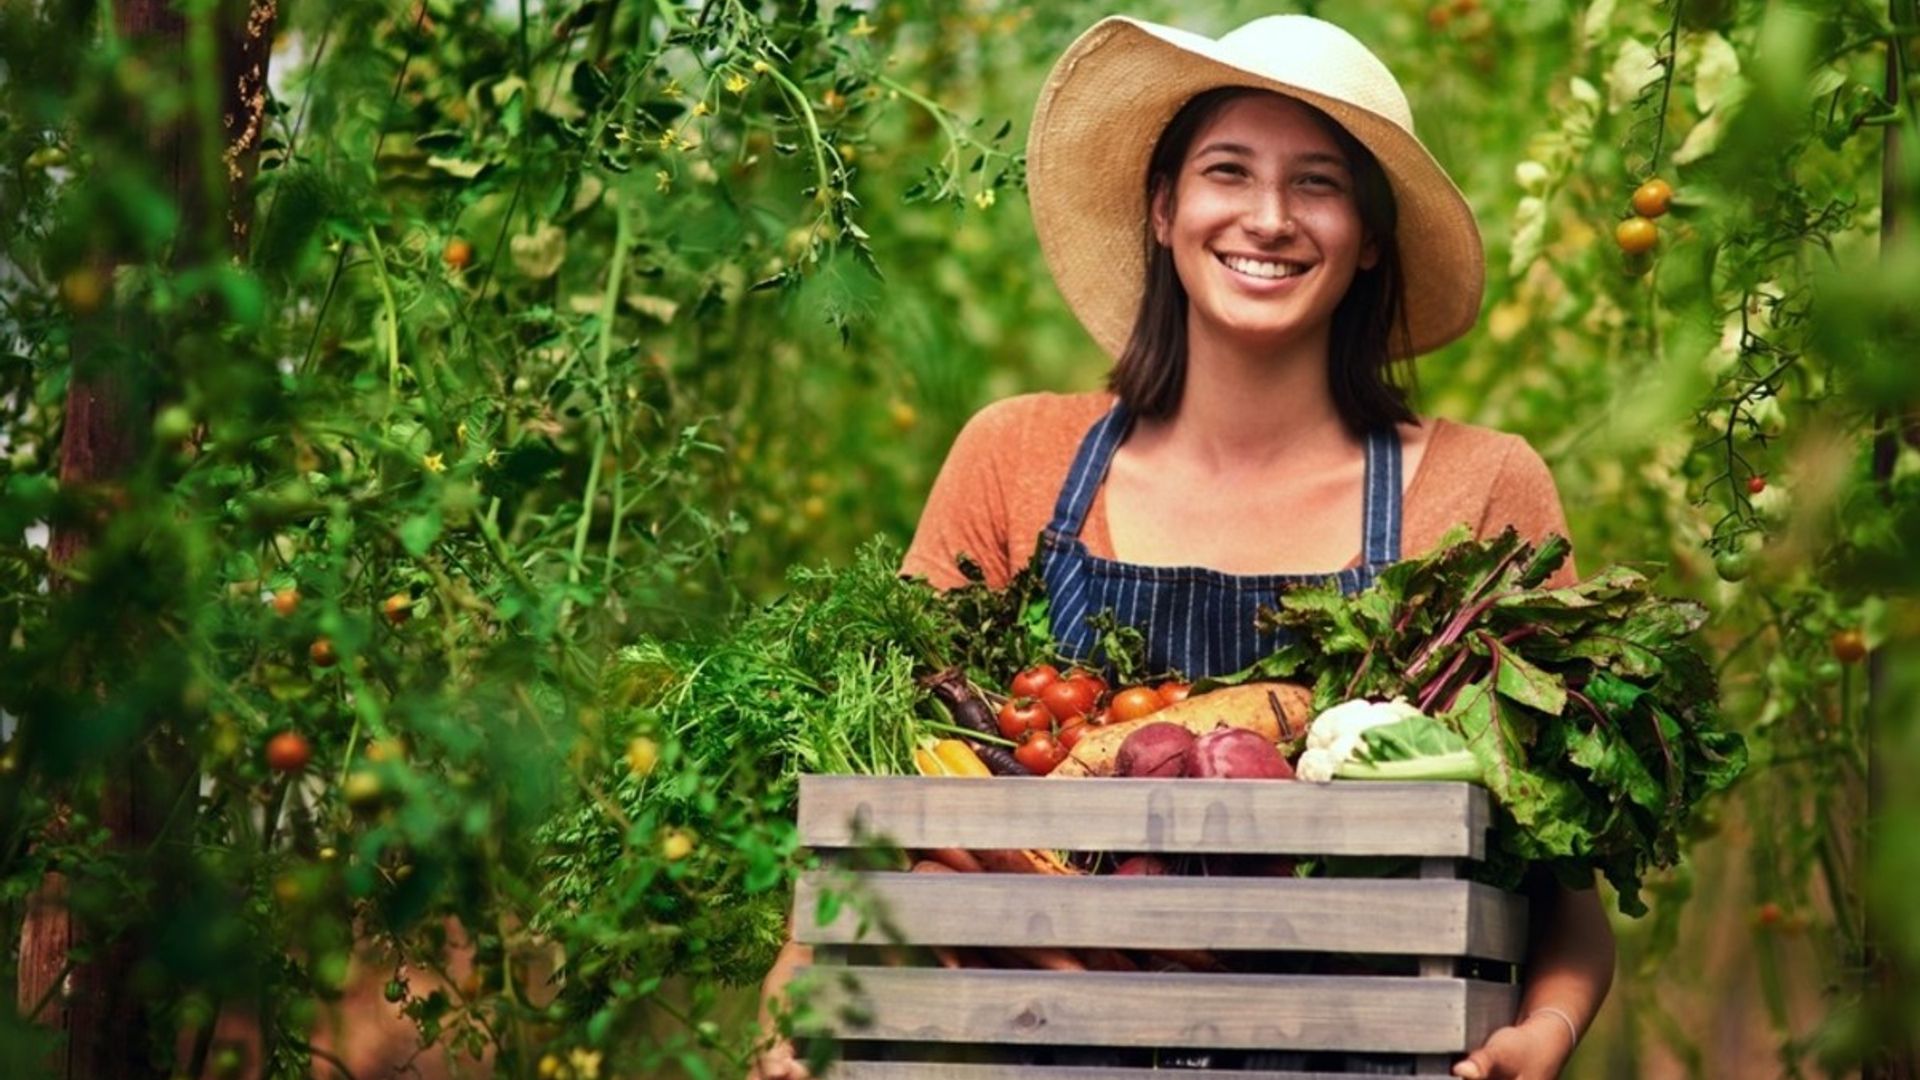 A gardener holding a basket of vegetables